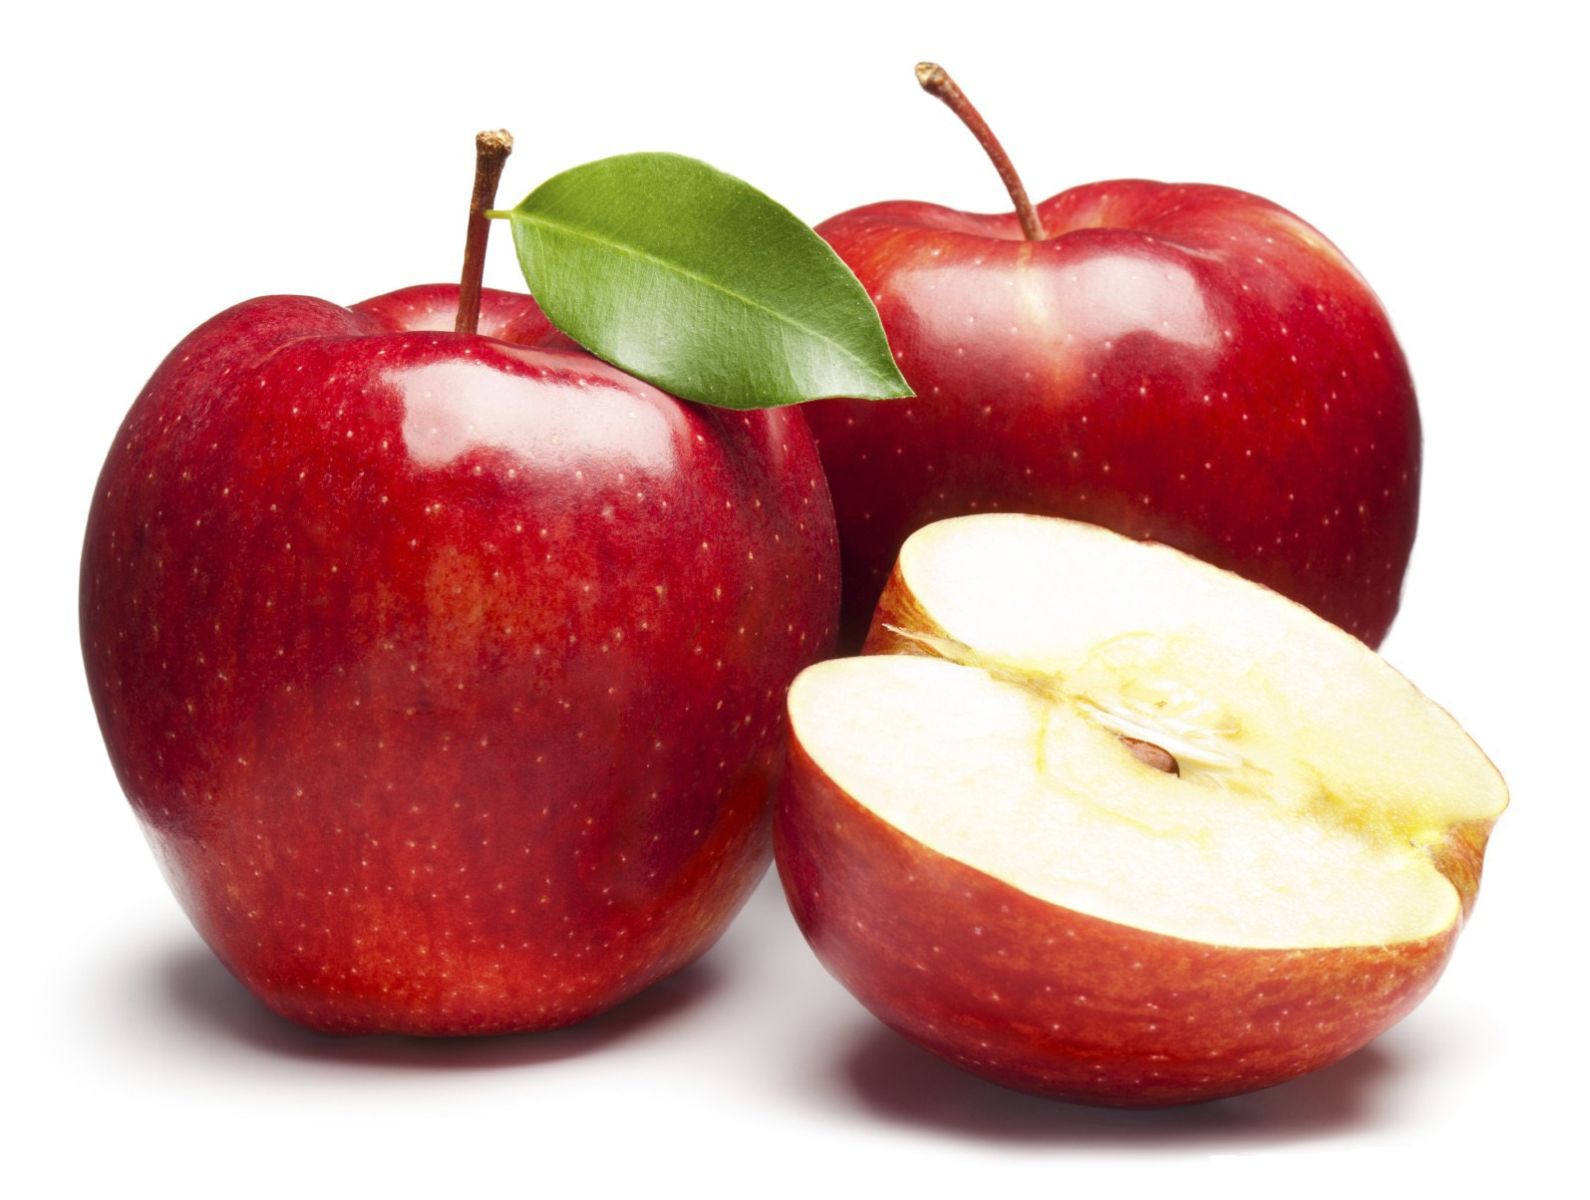 Bà bầu có nên ăn táo không? 7 lợi ích tuyệt vời khi ăn táo trong thai kỳ